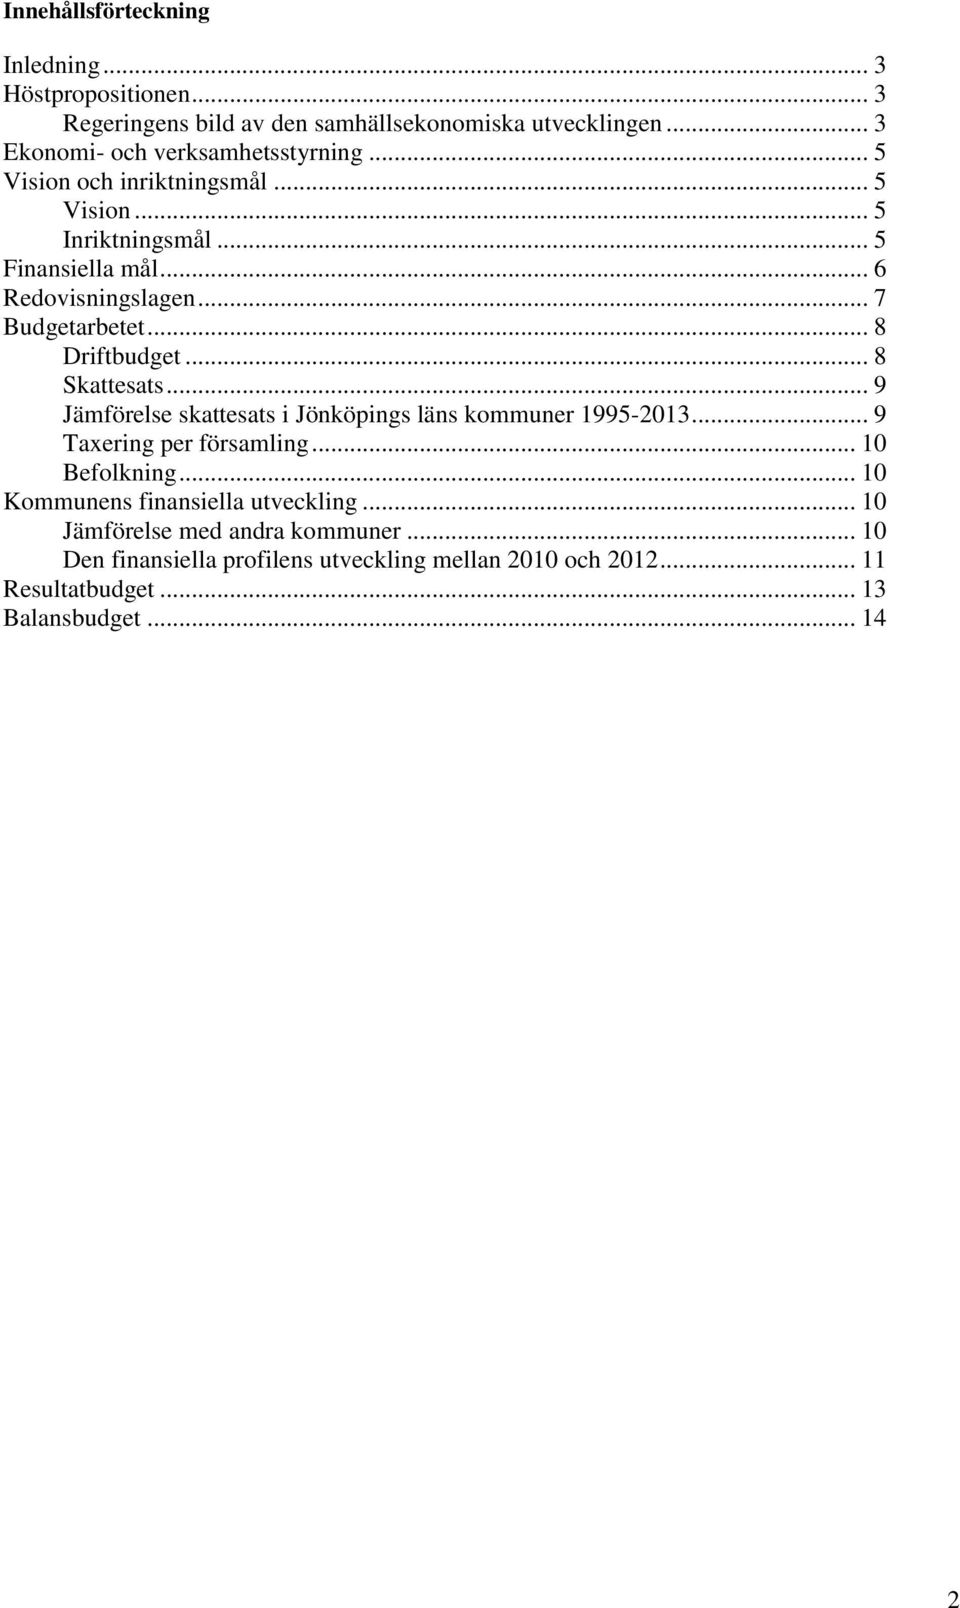 .. 8 Skattesats... 9 Jämförelse skattesats i Jönköpings läns kommuner 1995-2013... 9 Taxering per församling... 10 Befolkning.